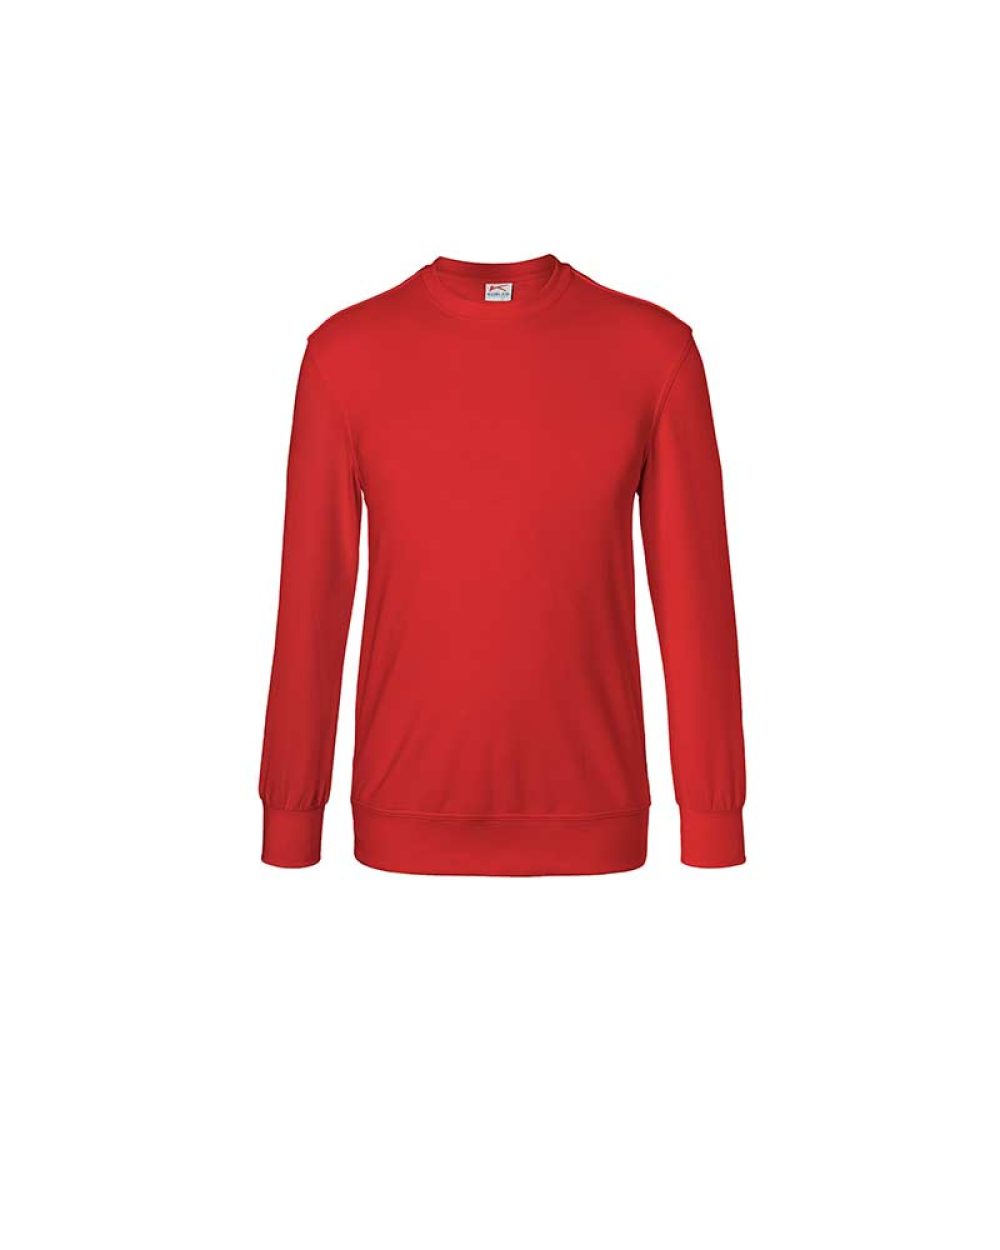 kuebler-sweatshirt-shirts-5023-6330-55